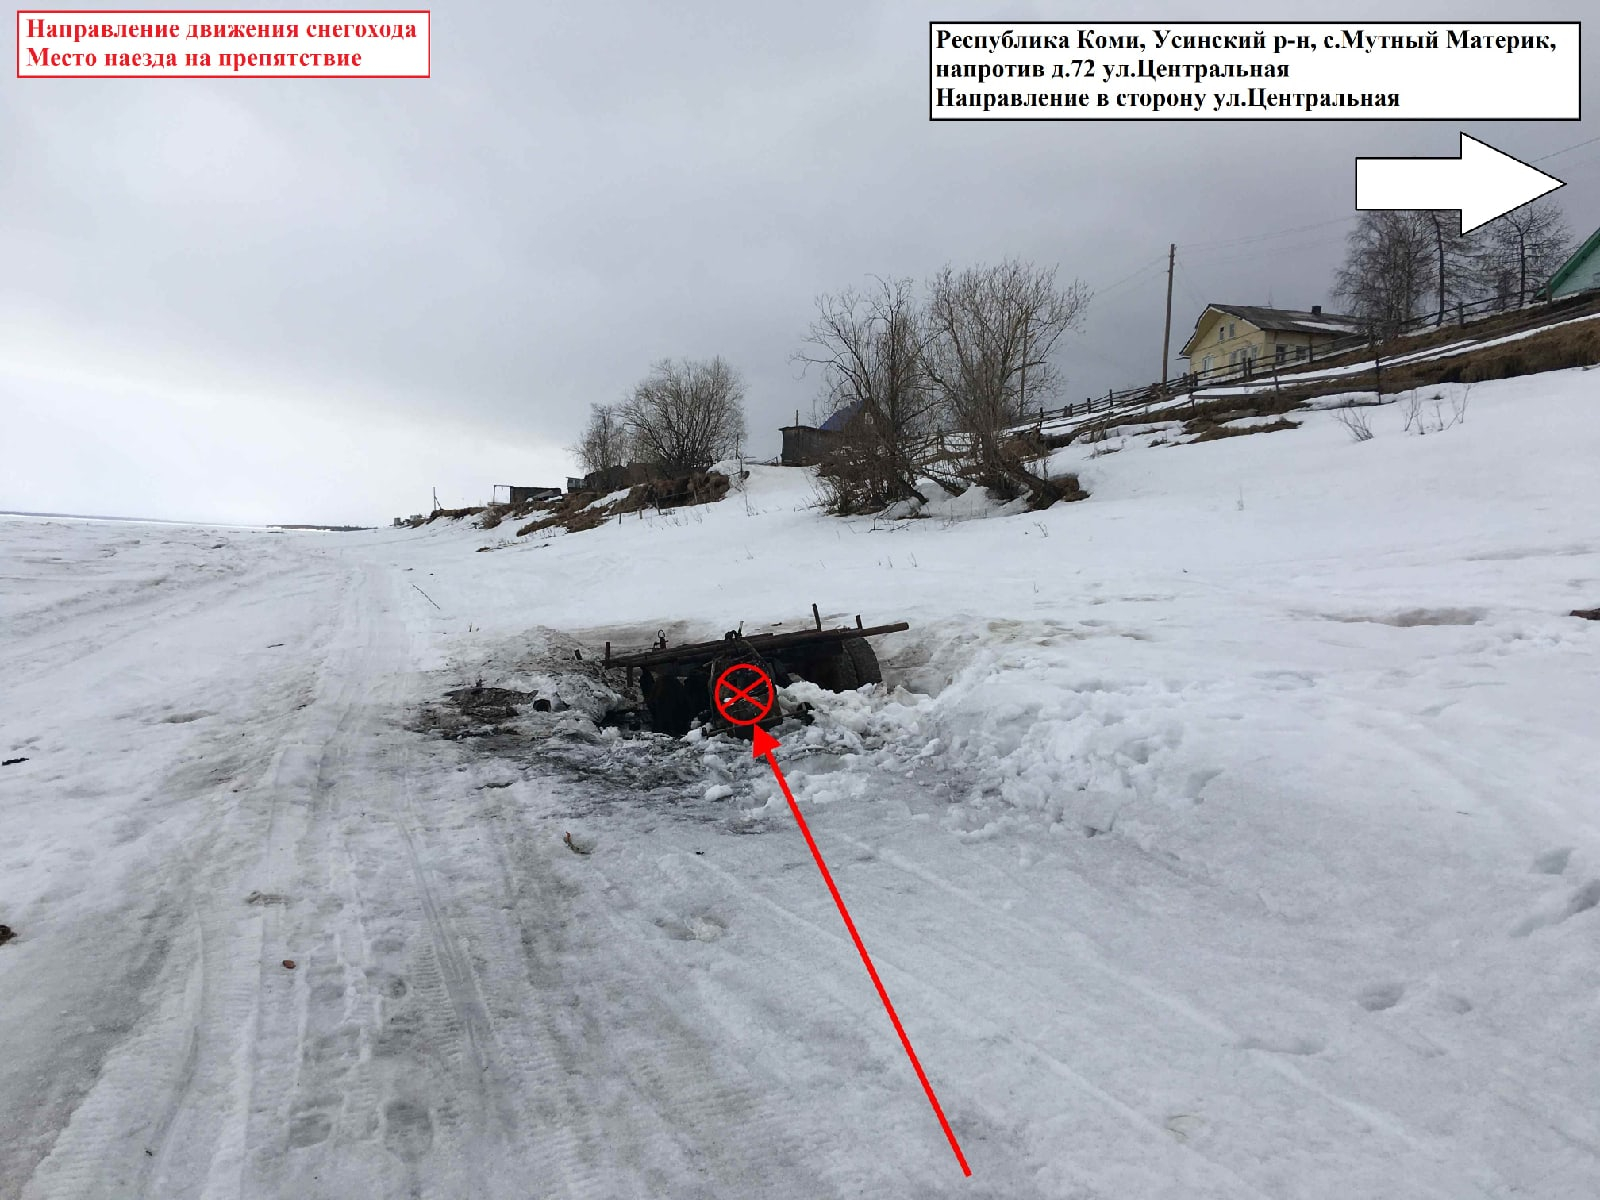 В Коми снегоход вспыхнул прямо под пассажиркой и водителем